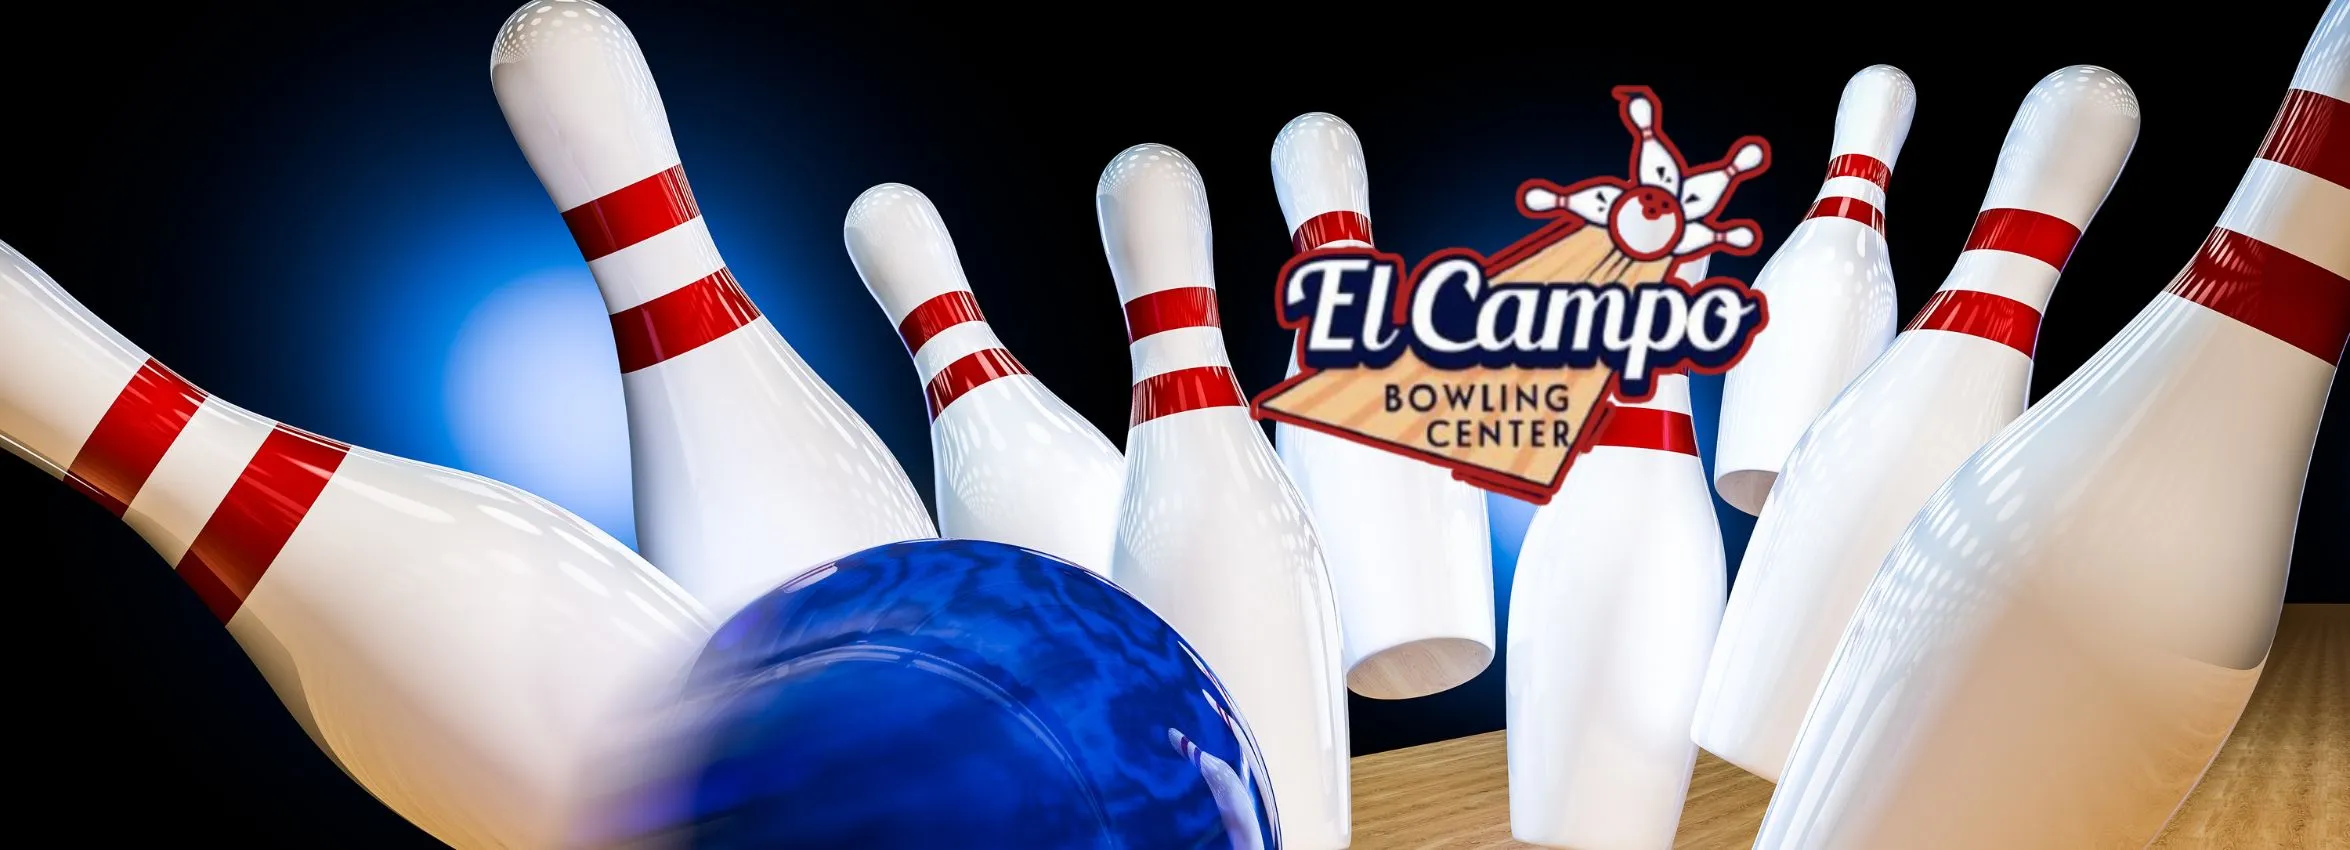 El-Campo-Bowling-Center_Desktop_ET